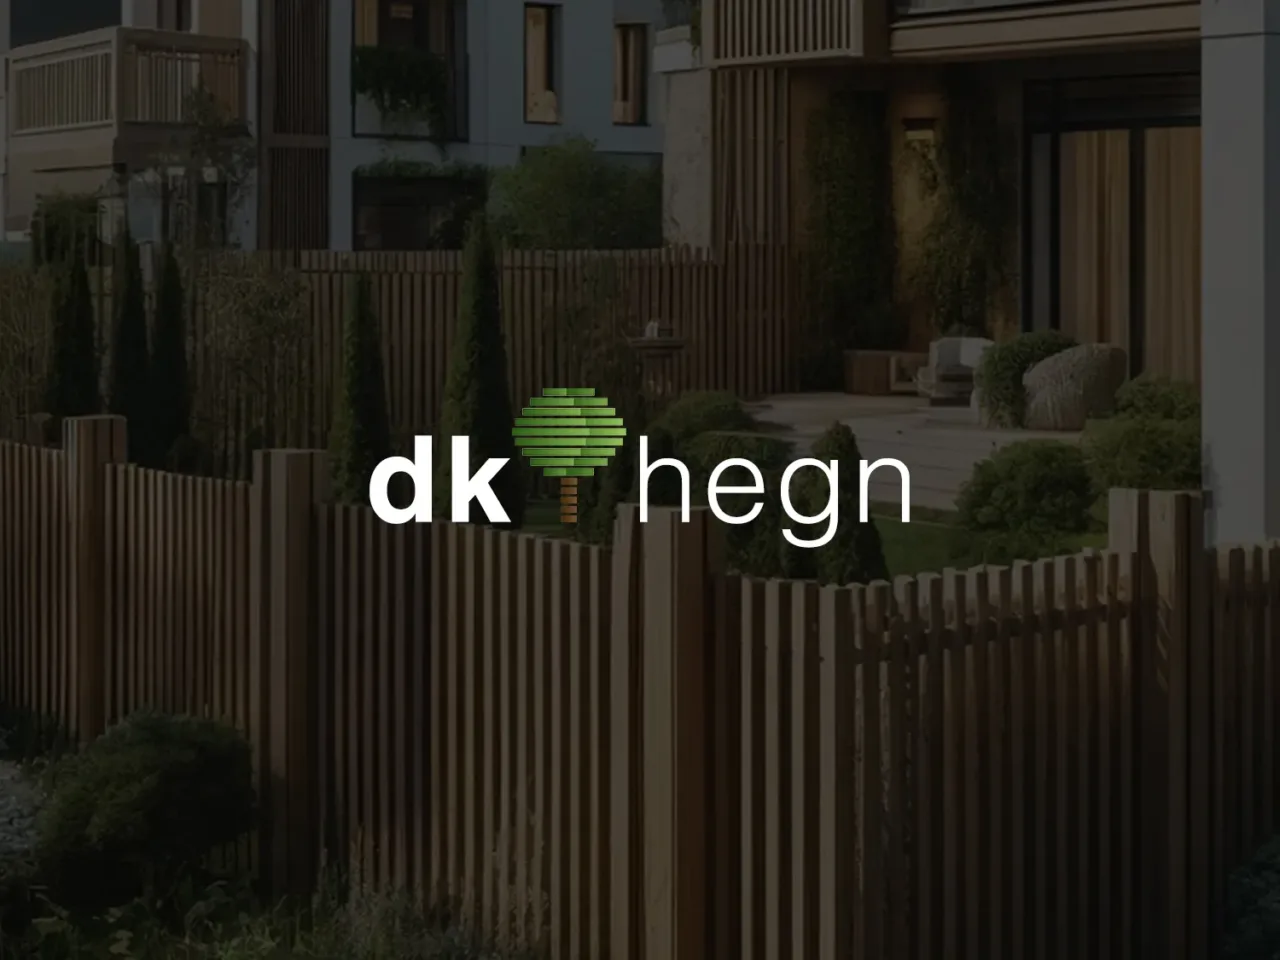 DK-hegn